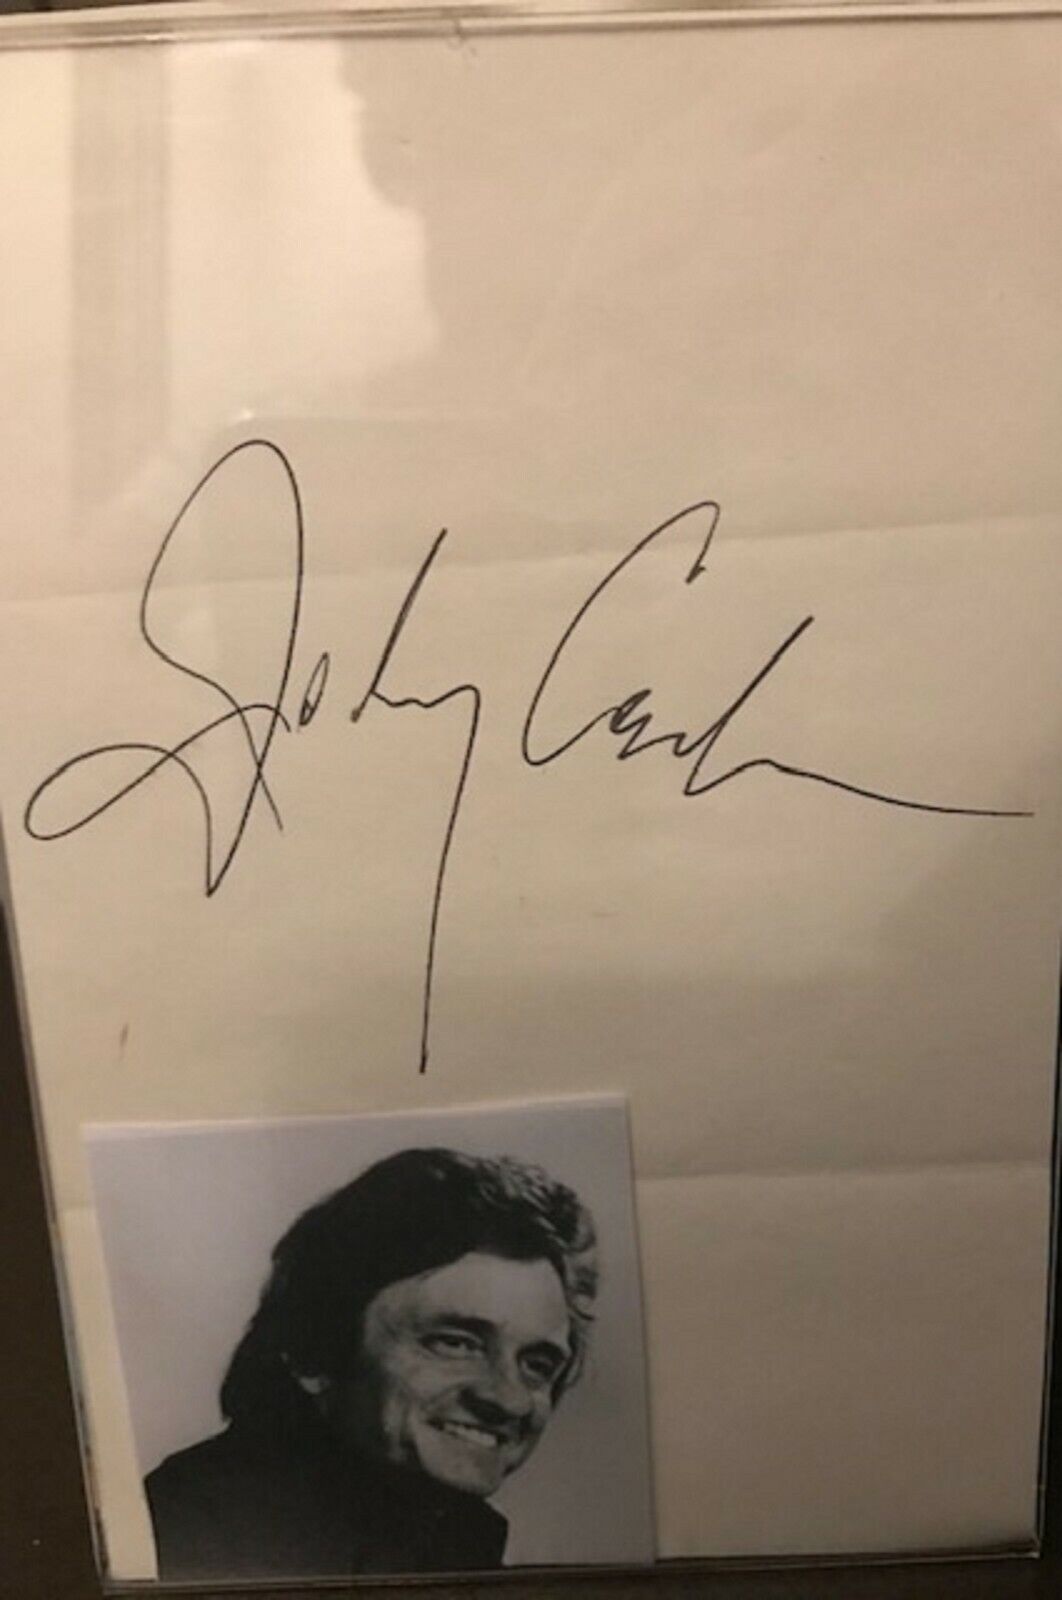 Johnny Cash Signed Autograph I WALK THE LINE LEGEND, VERY RARE